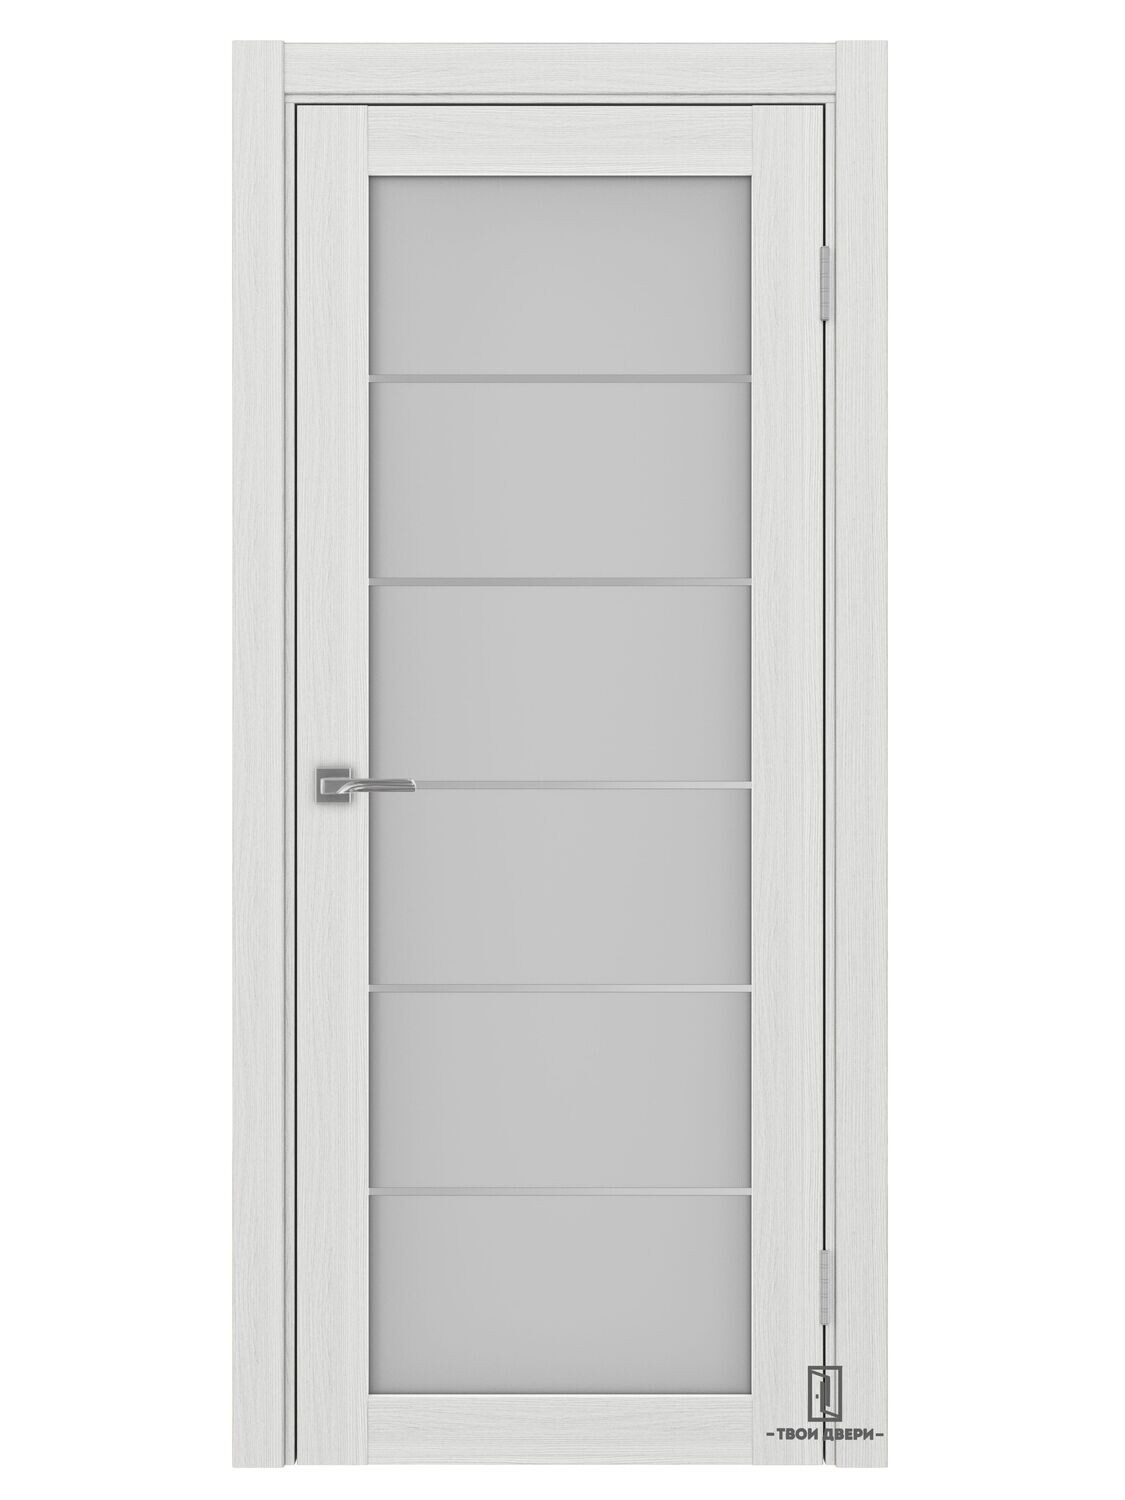 Дверь межкомнатная АСС 501.2 (молдинги), ясень серебристый